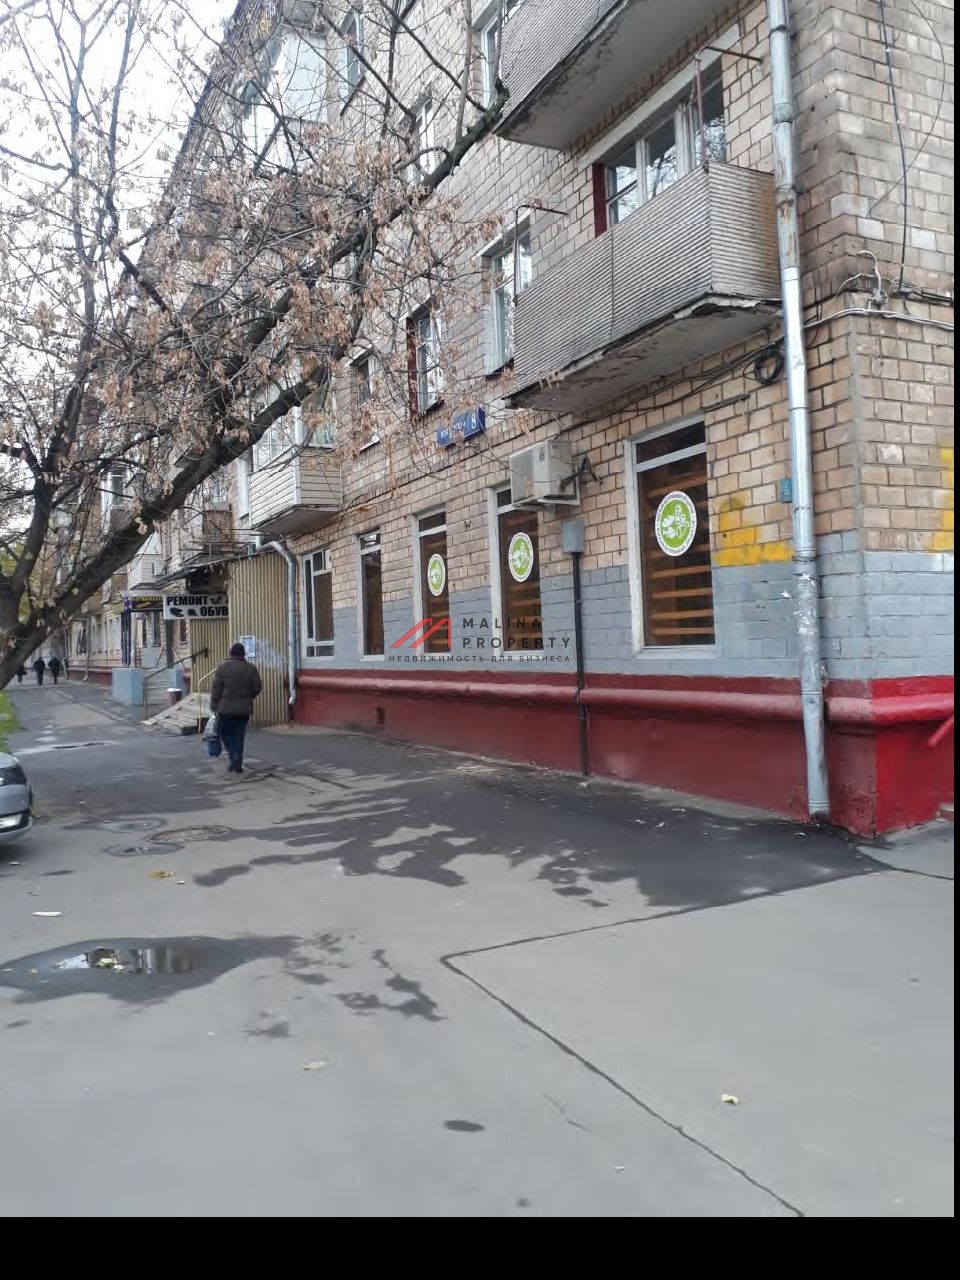 Аренда торгового помещения на Коптевской улице